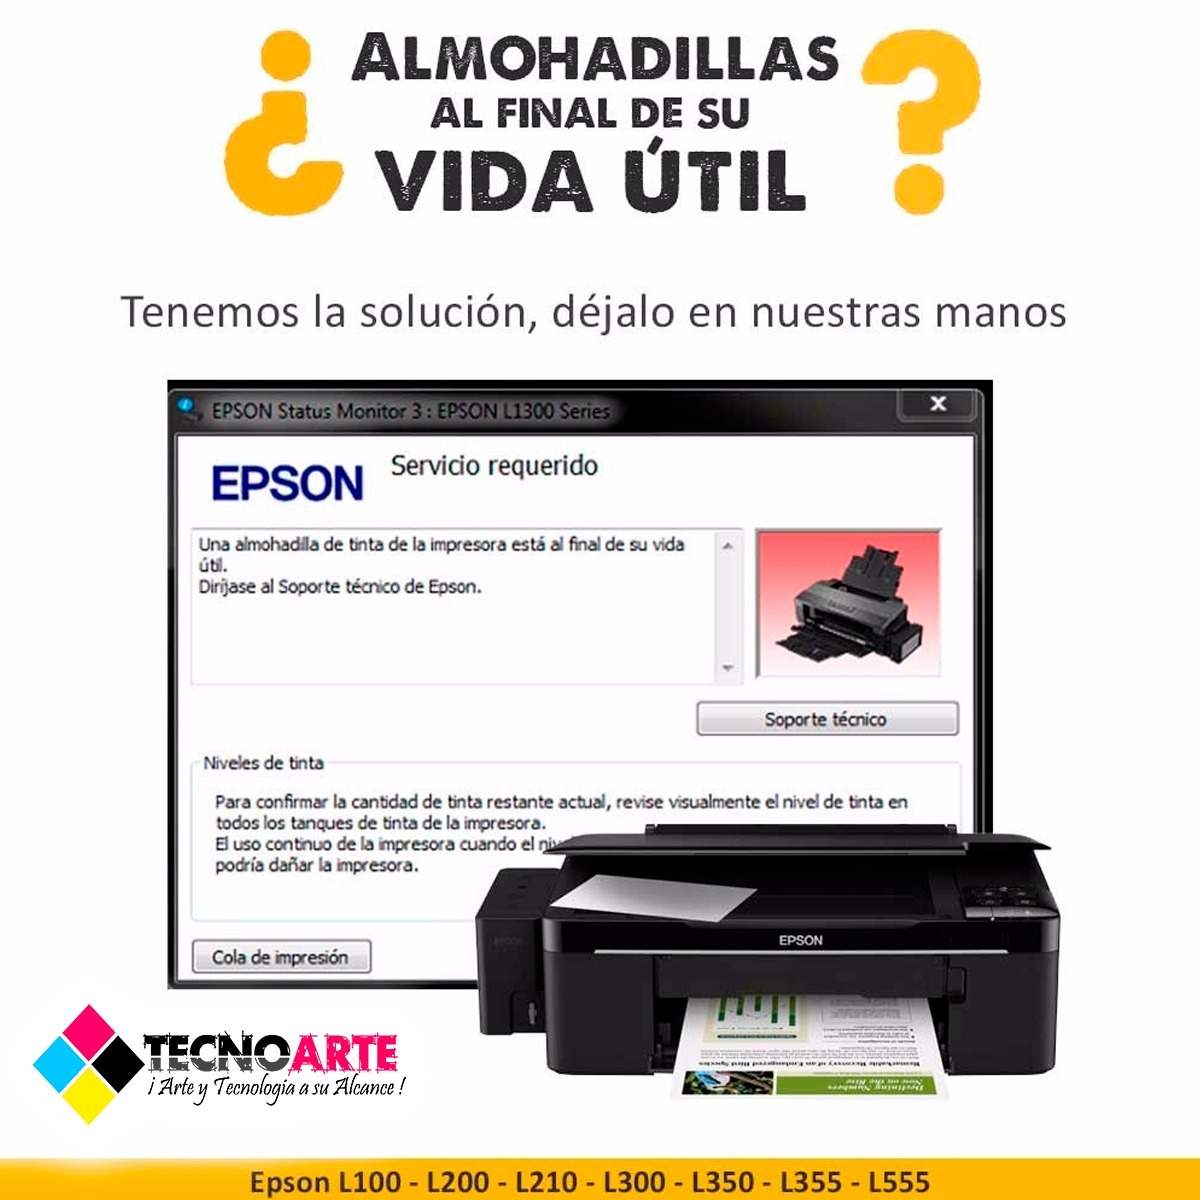 Reset Almohadillas Epson L360 Almuadilla Con Instrucciones 15000 En Mercado Libre 2462